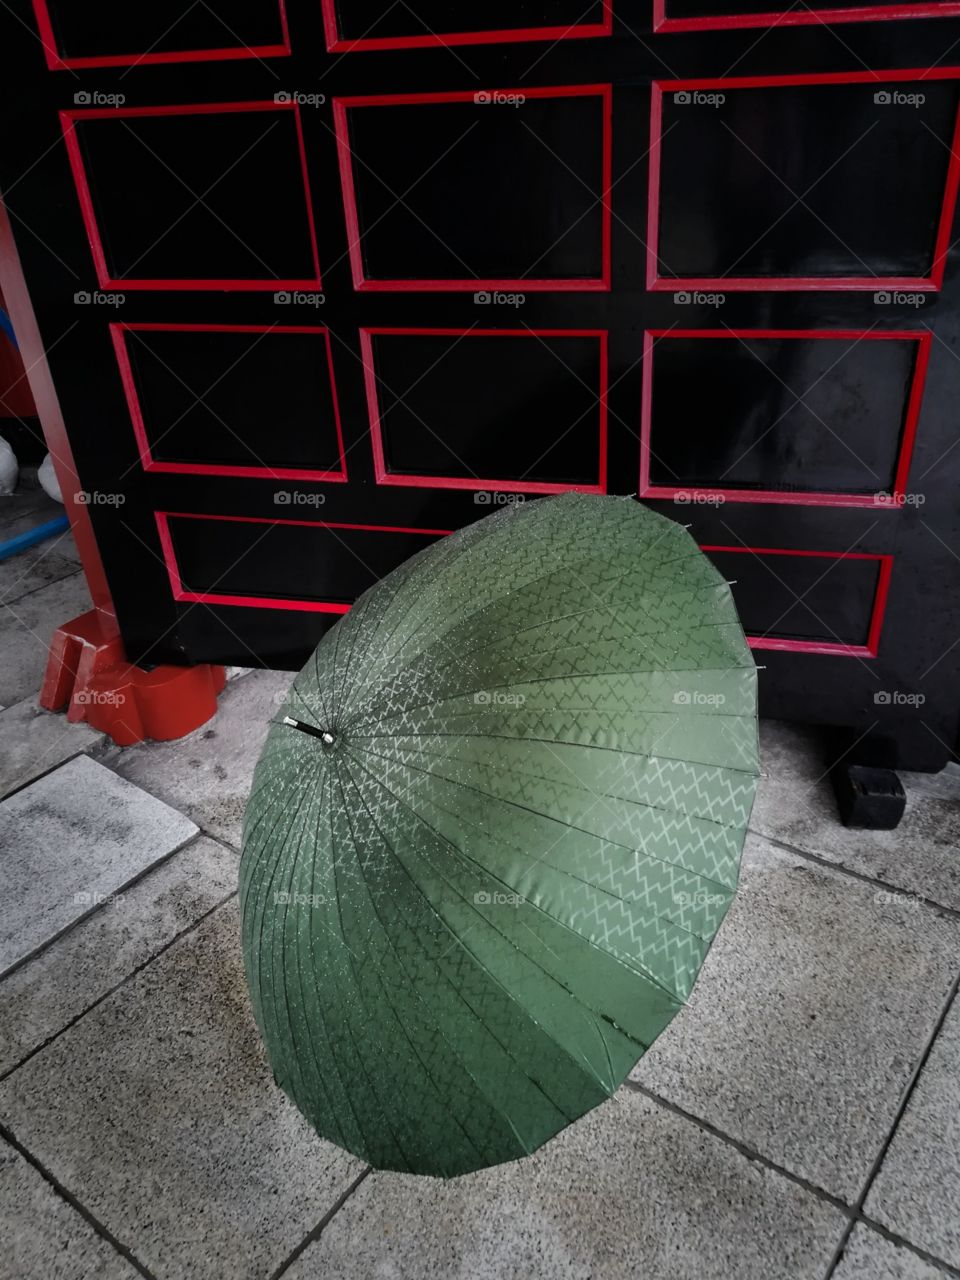 My favorite umbrella